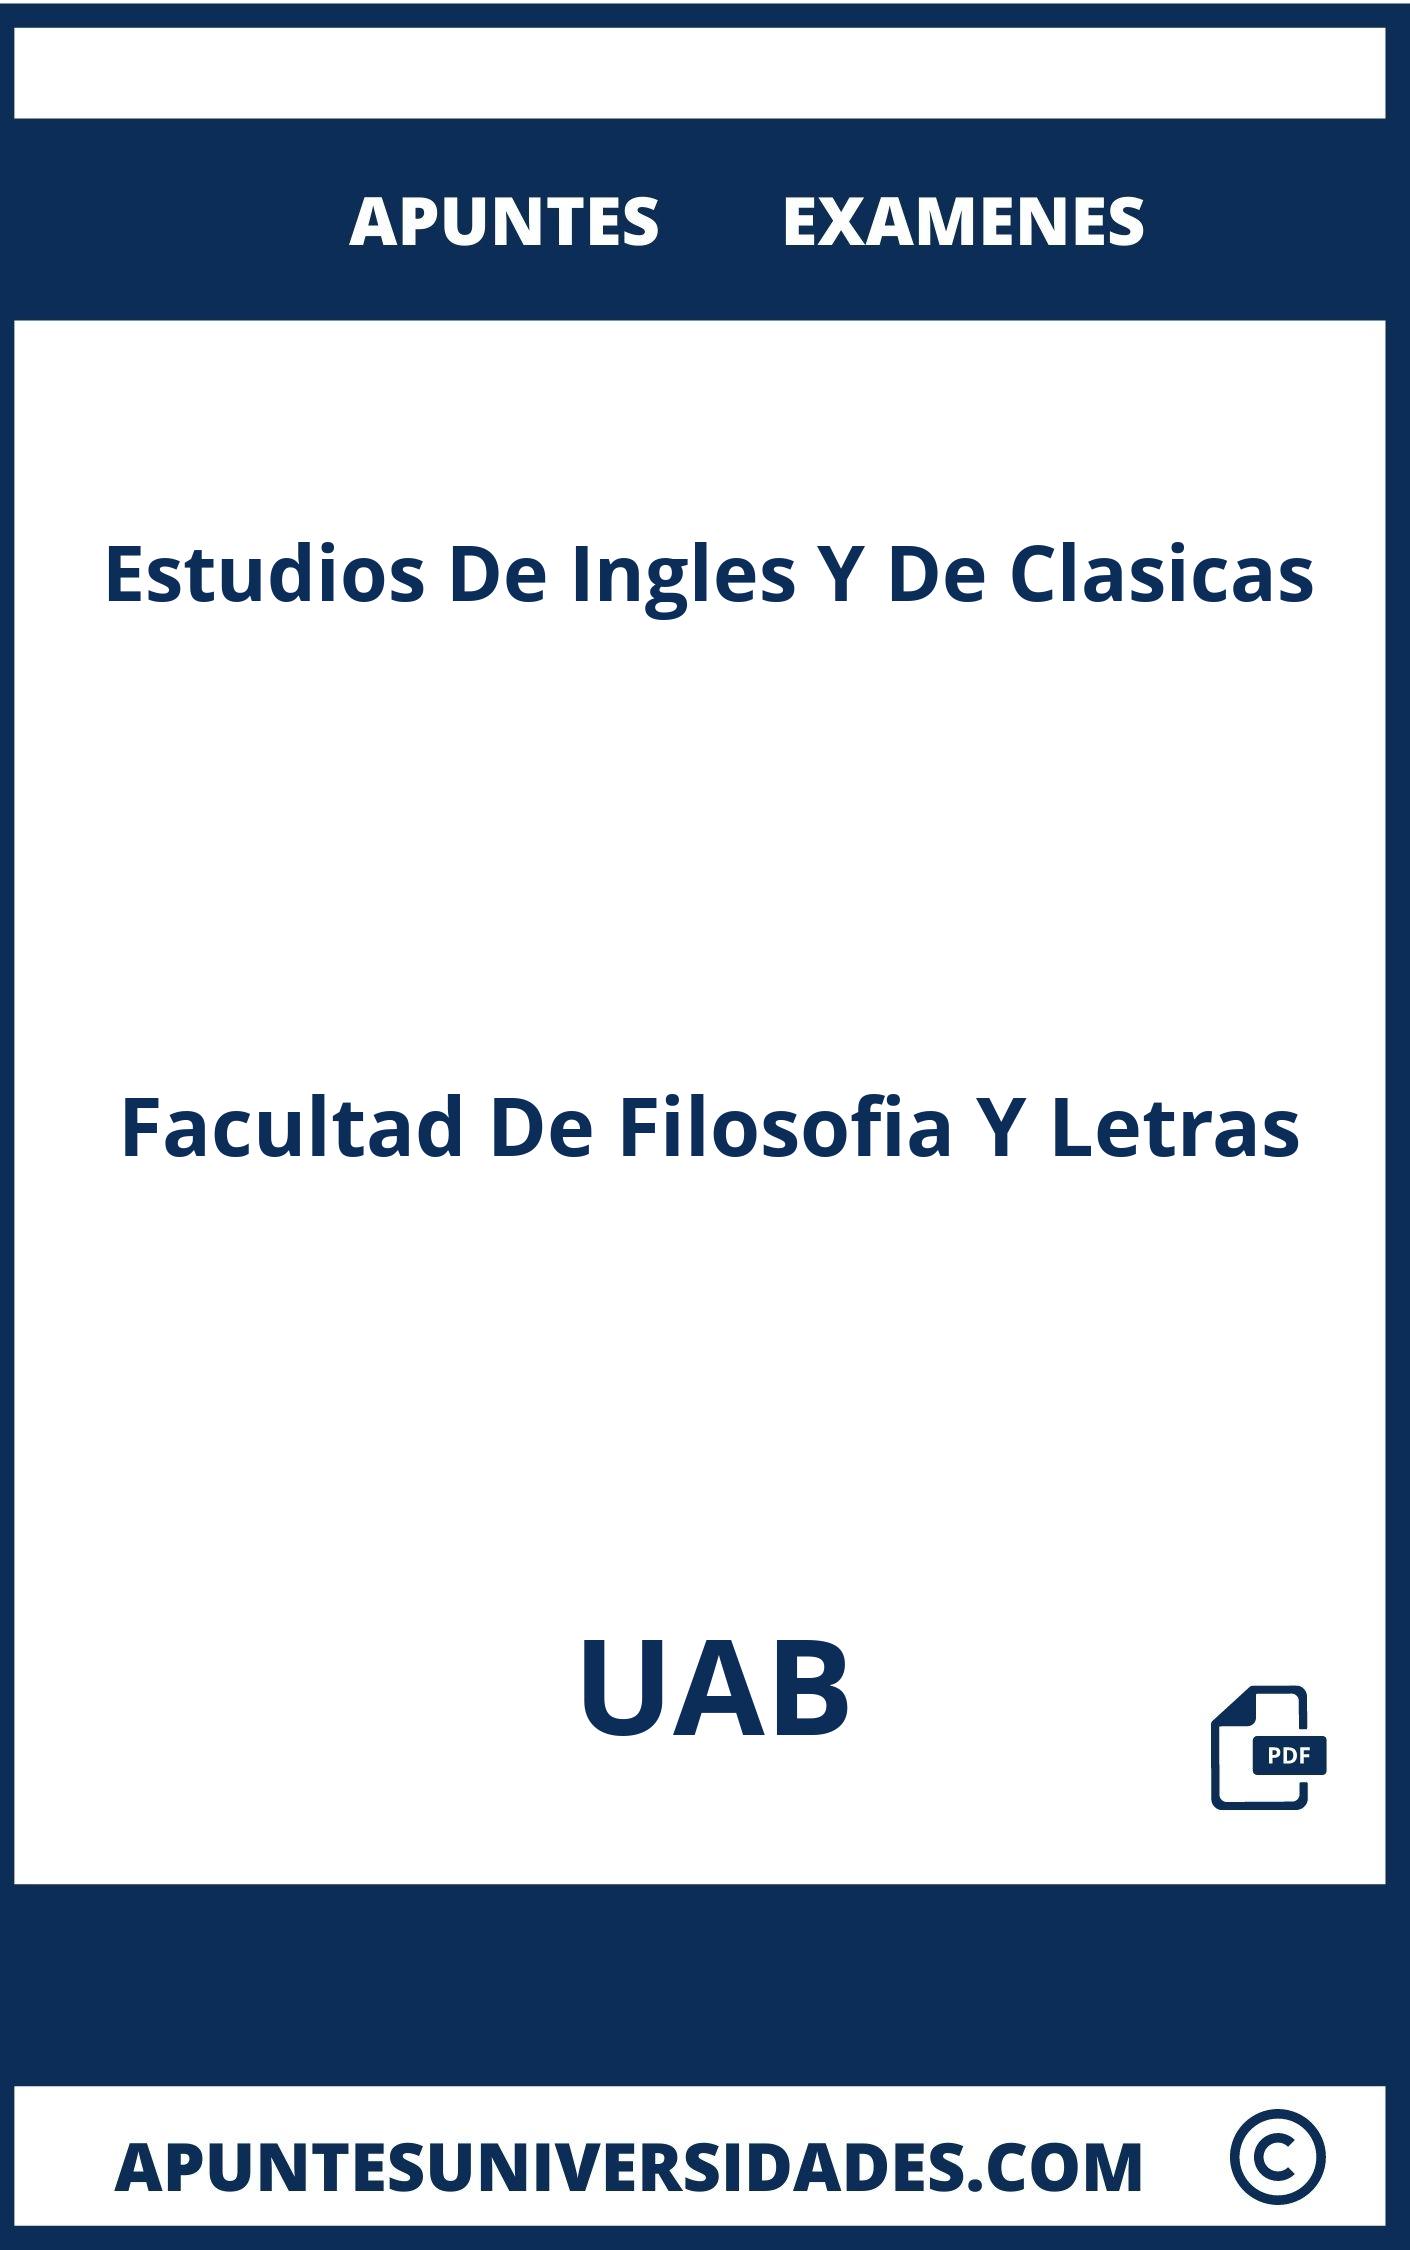 Apuntes y Examenes de Estudios De Ingles Y De Clasicas UAB